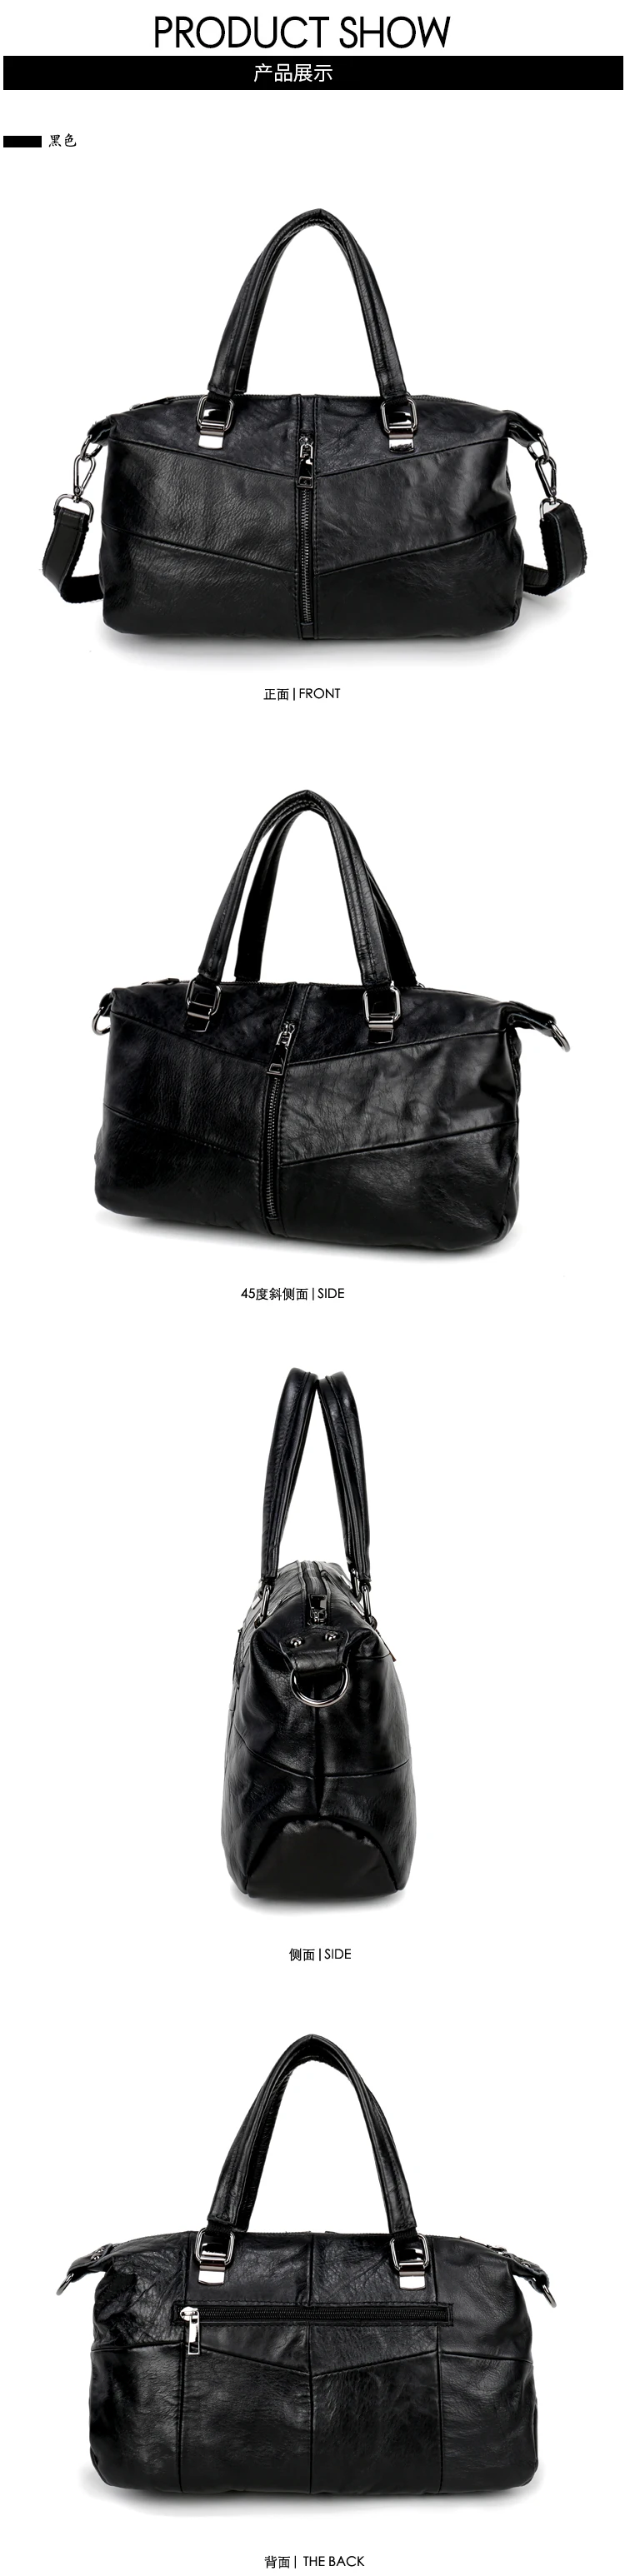 IPinee натуральная кожа женская сумка через плечо известный бренд сумки дизайнерские Pinee модные сумки